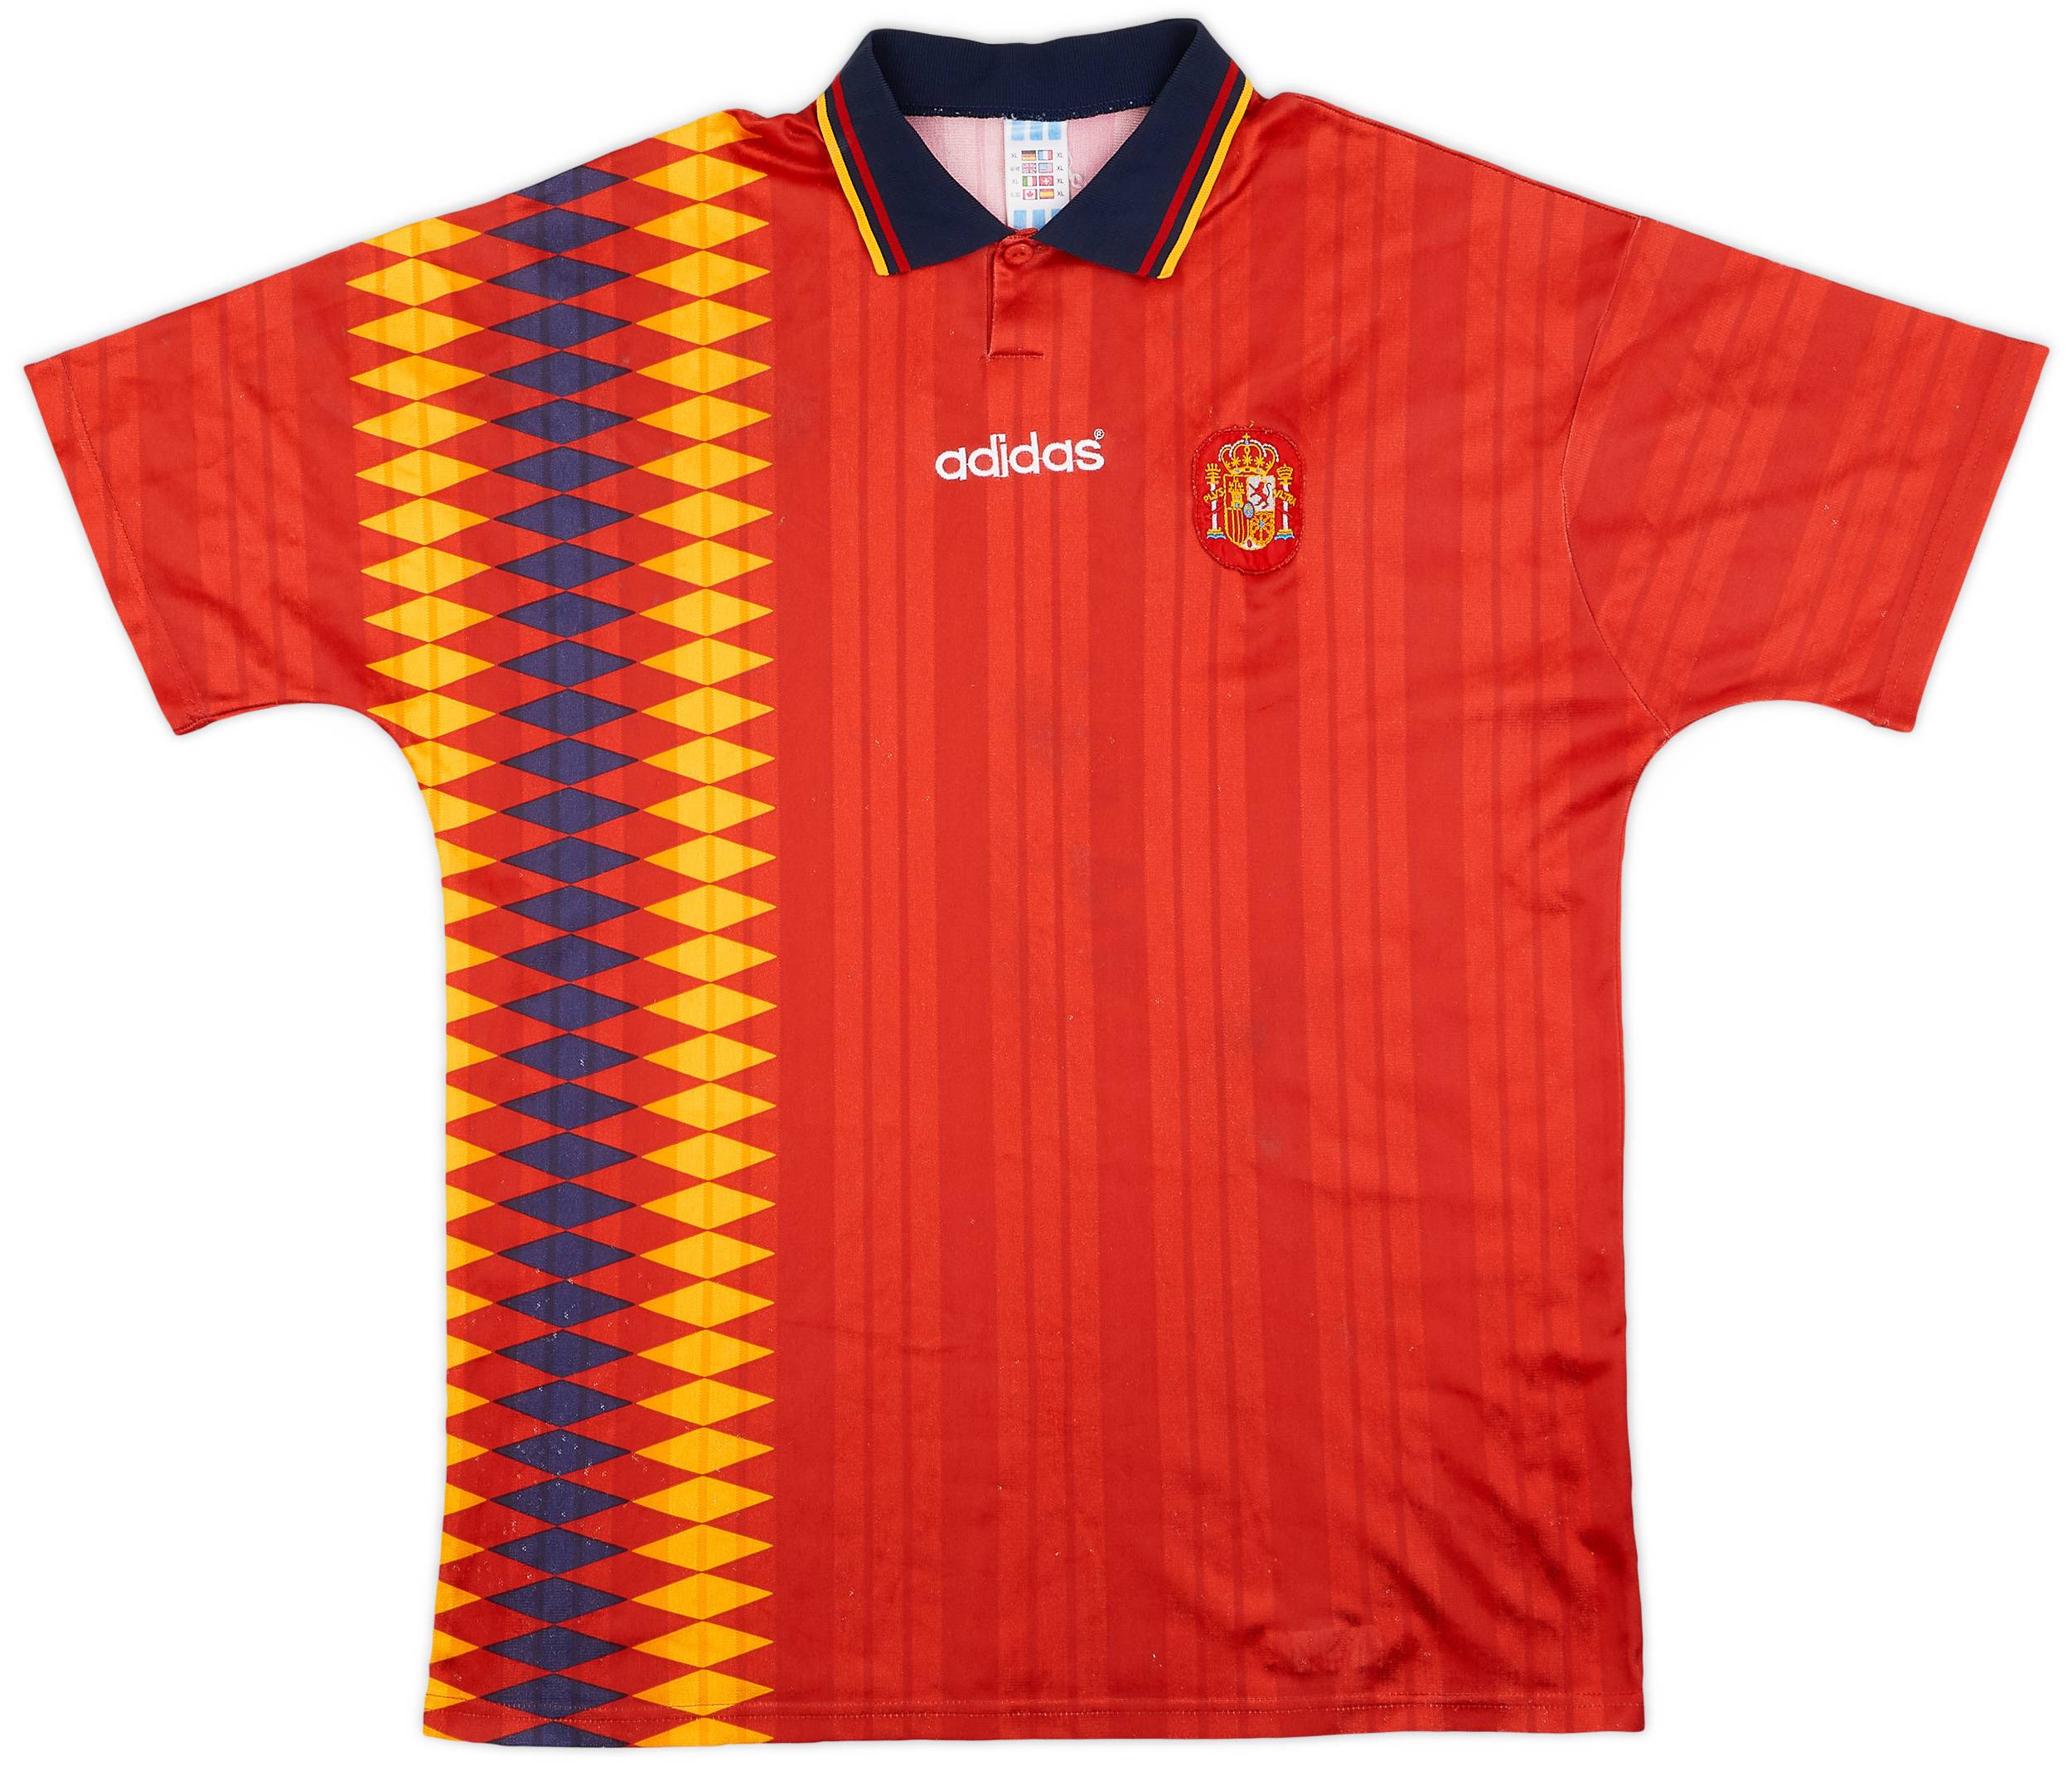 1994-96 Spain Home Shirt - 8/10 - (XL)